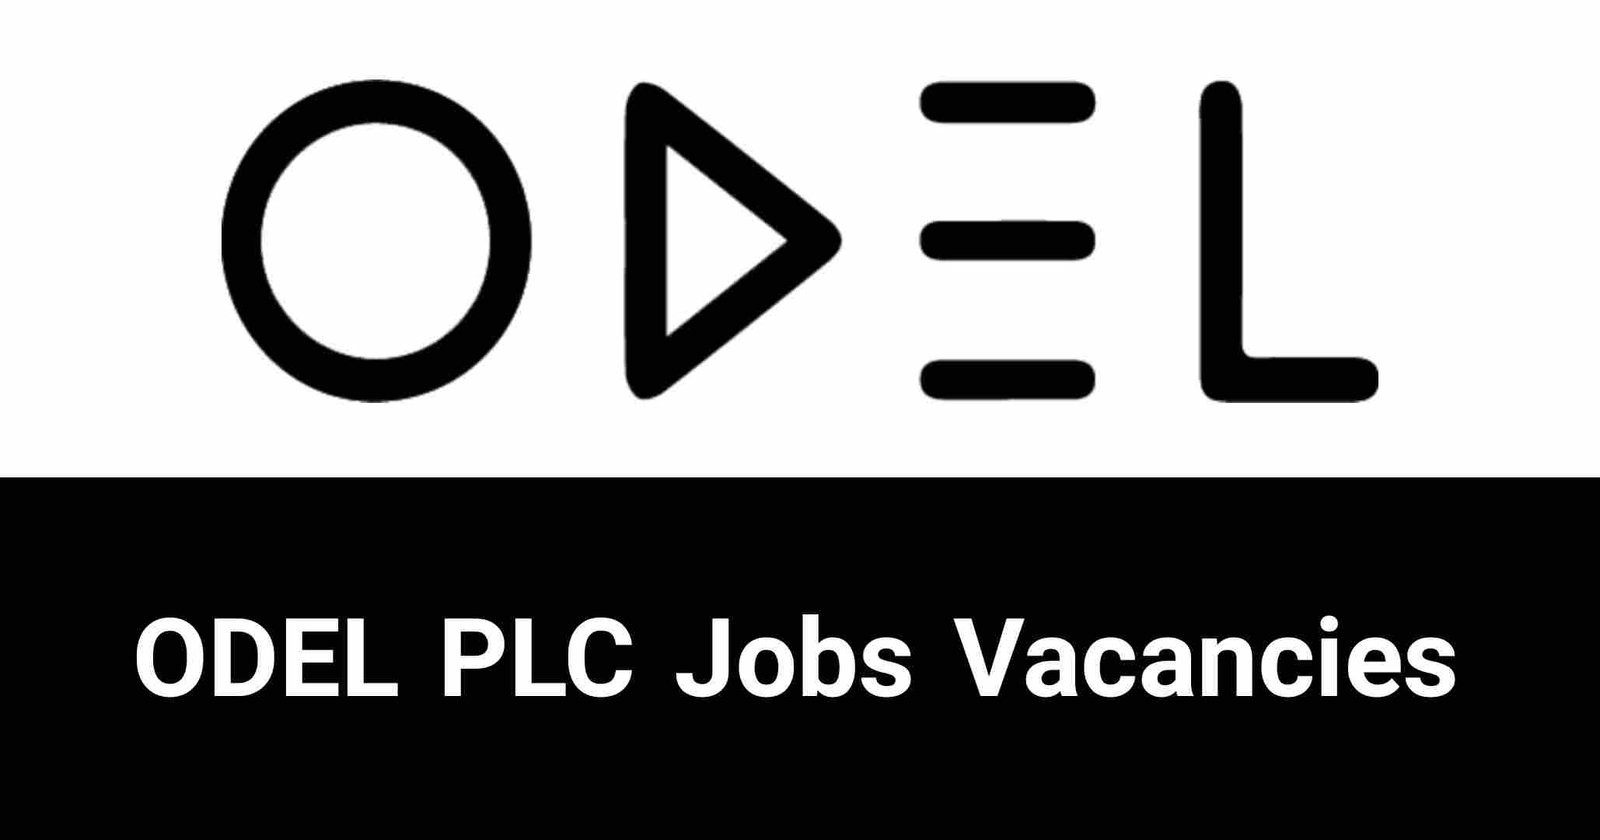 ODEL PLC Jobs Vacancies